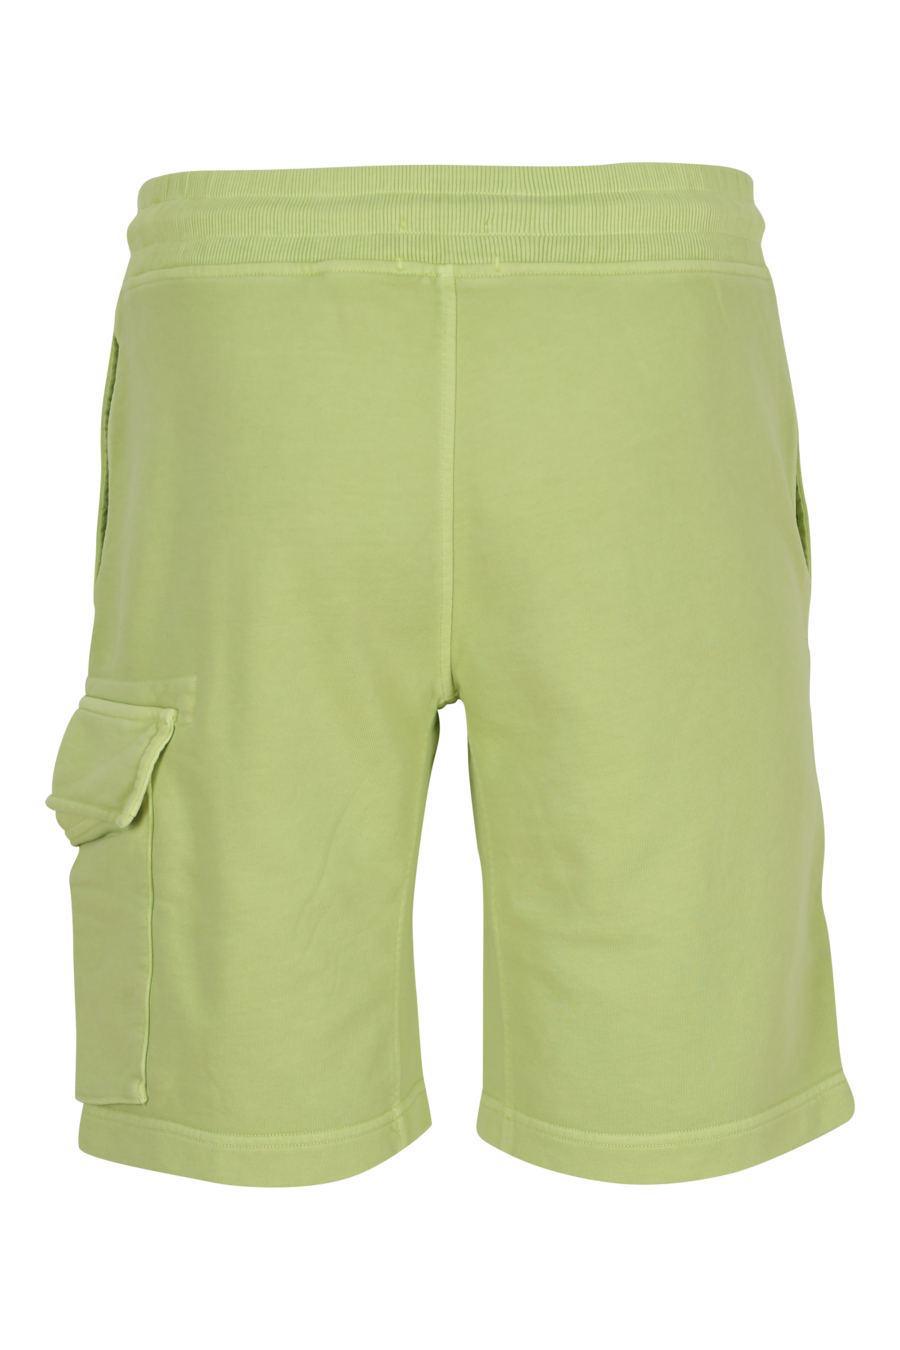 Pantalón de chándal midi verde claro estilo cargo con minilogo lente - 7620943731422 2